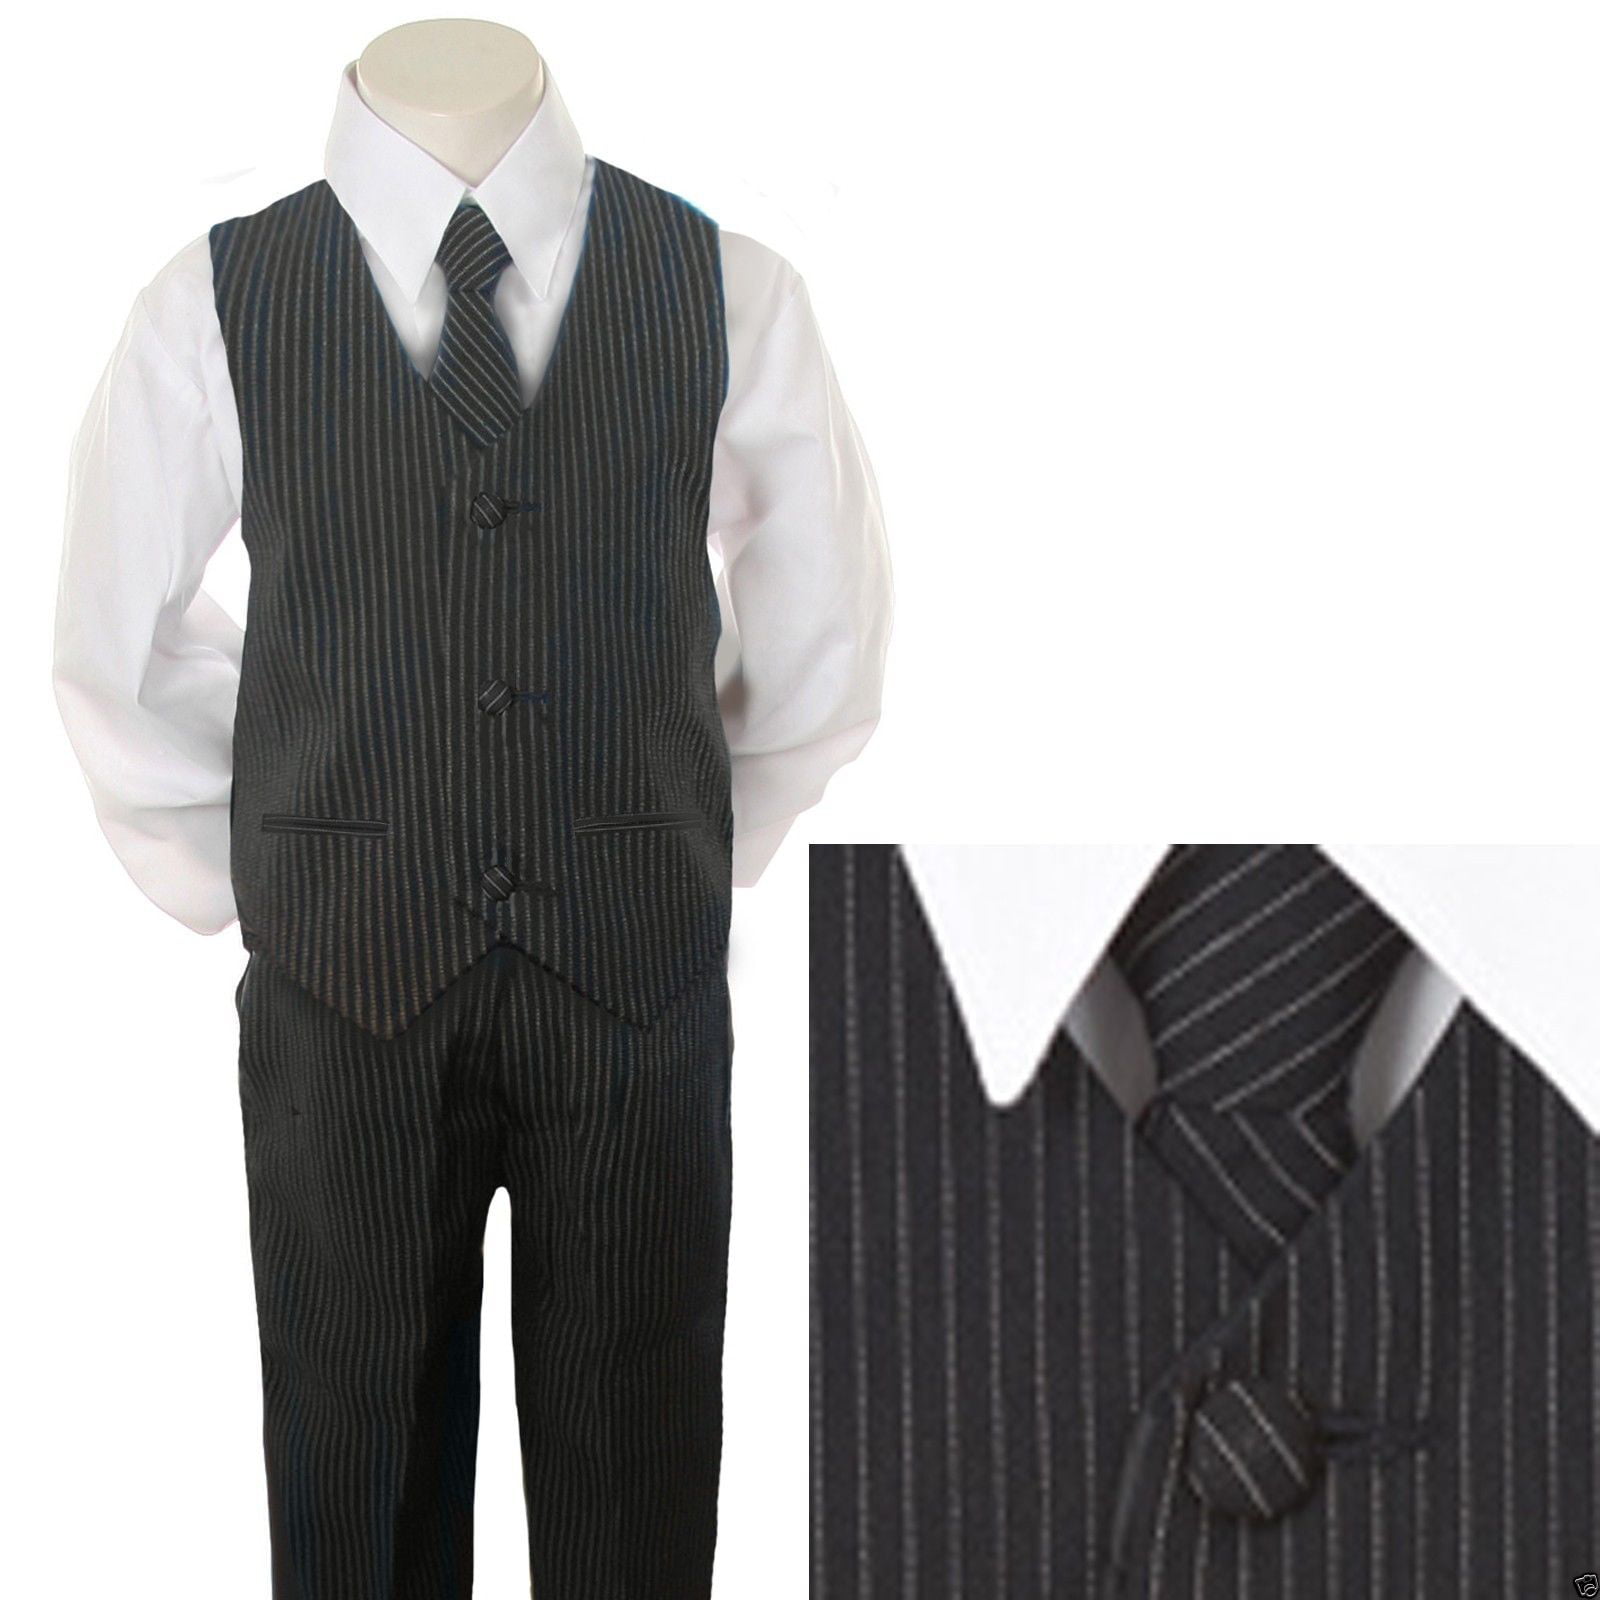 Toddler Boys Recital Gray/Blue//Black Party Vest Suit Set Sz: XL to 6 